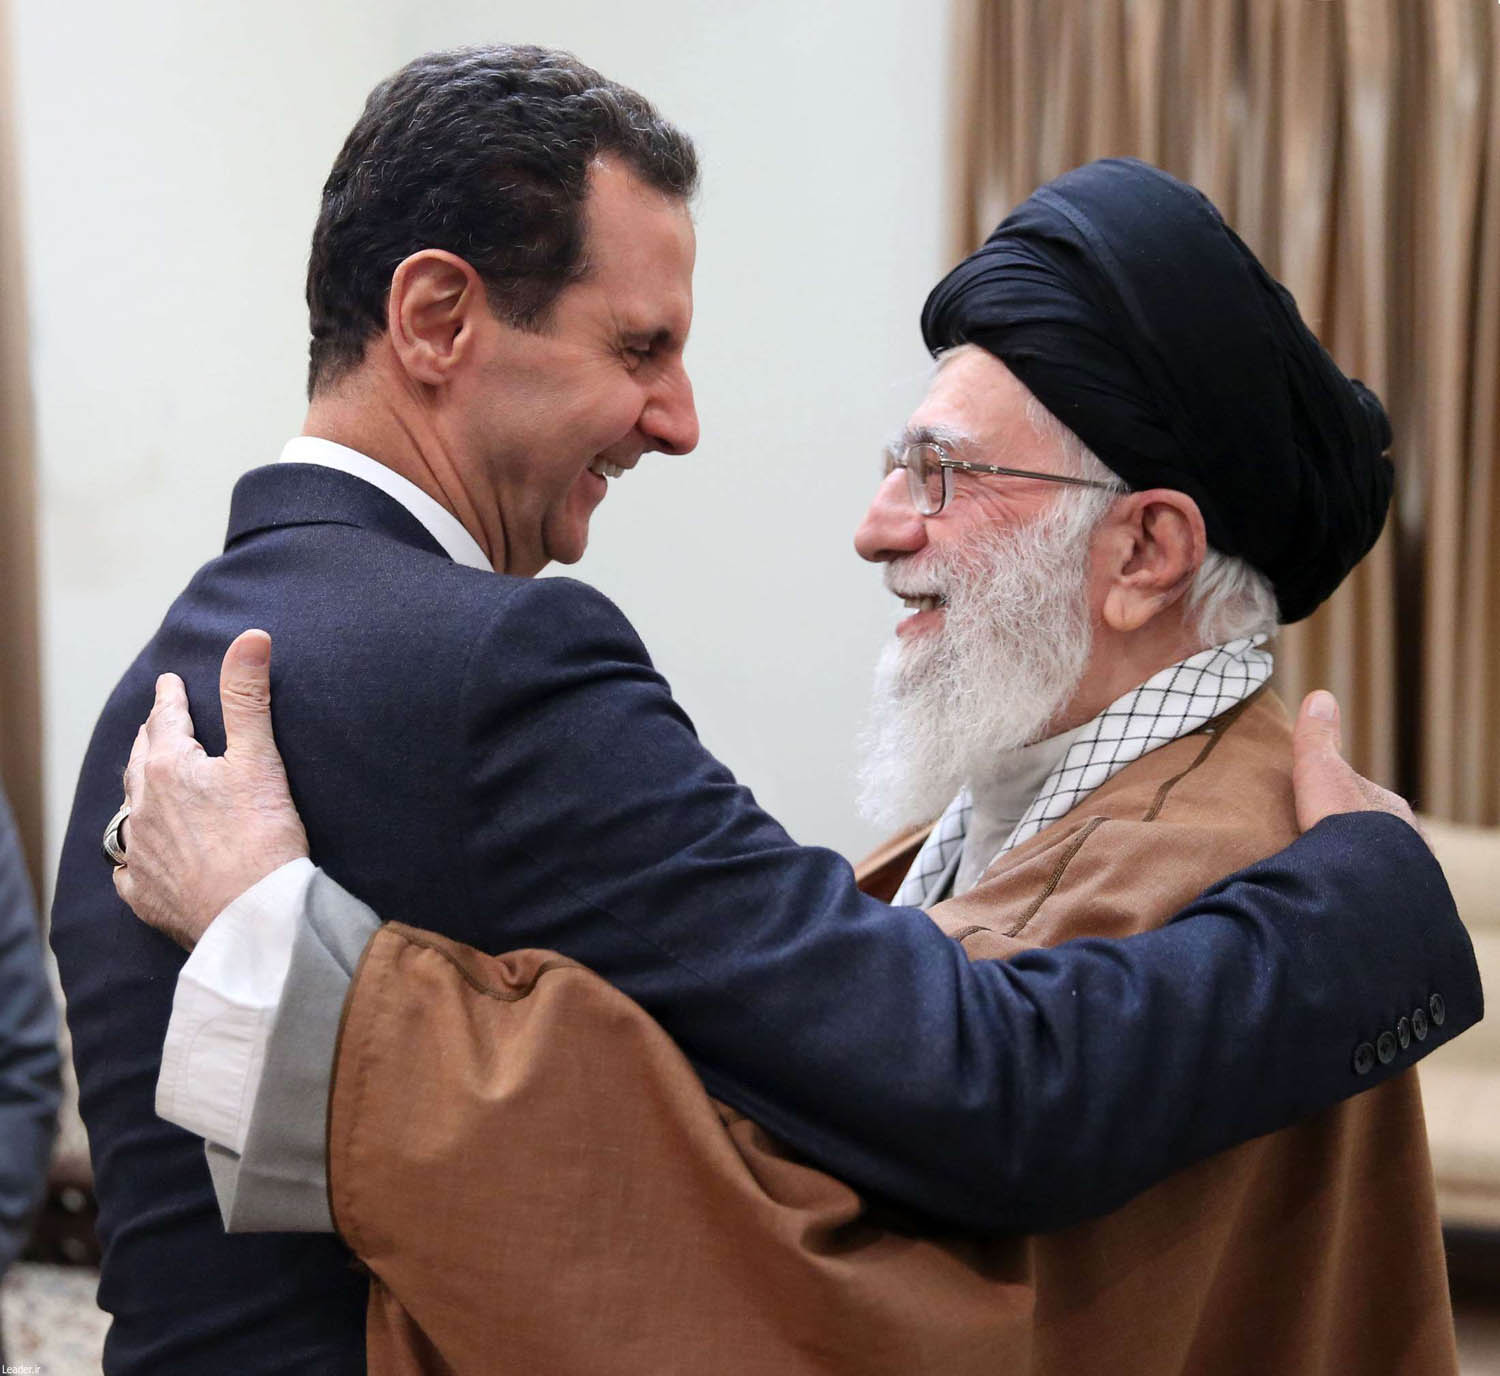 المرشد الأعلى علي خامنئي يحتضن الرئيس السوري بشار الأسد في طهران